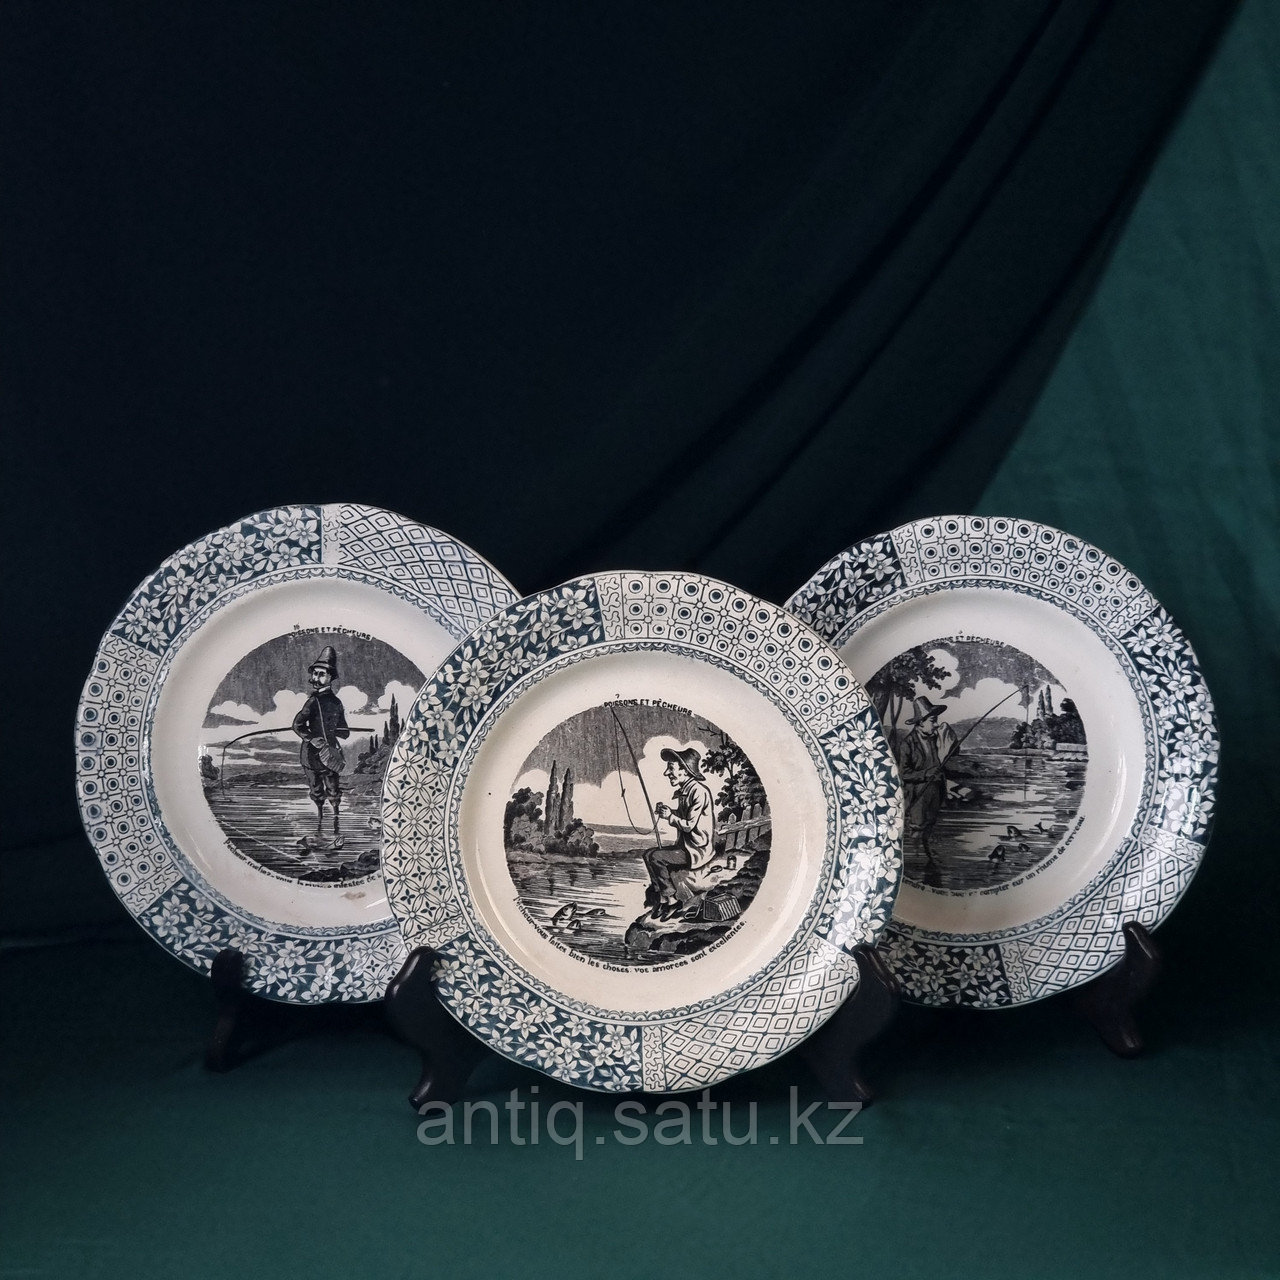 Коллекция тарелок с сюжетом «Рыбалка».